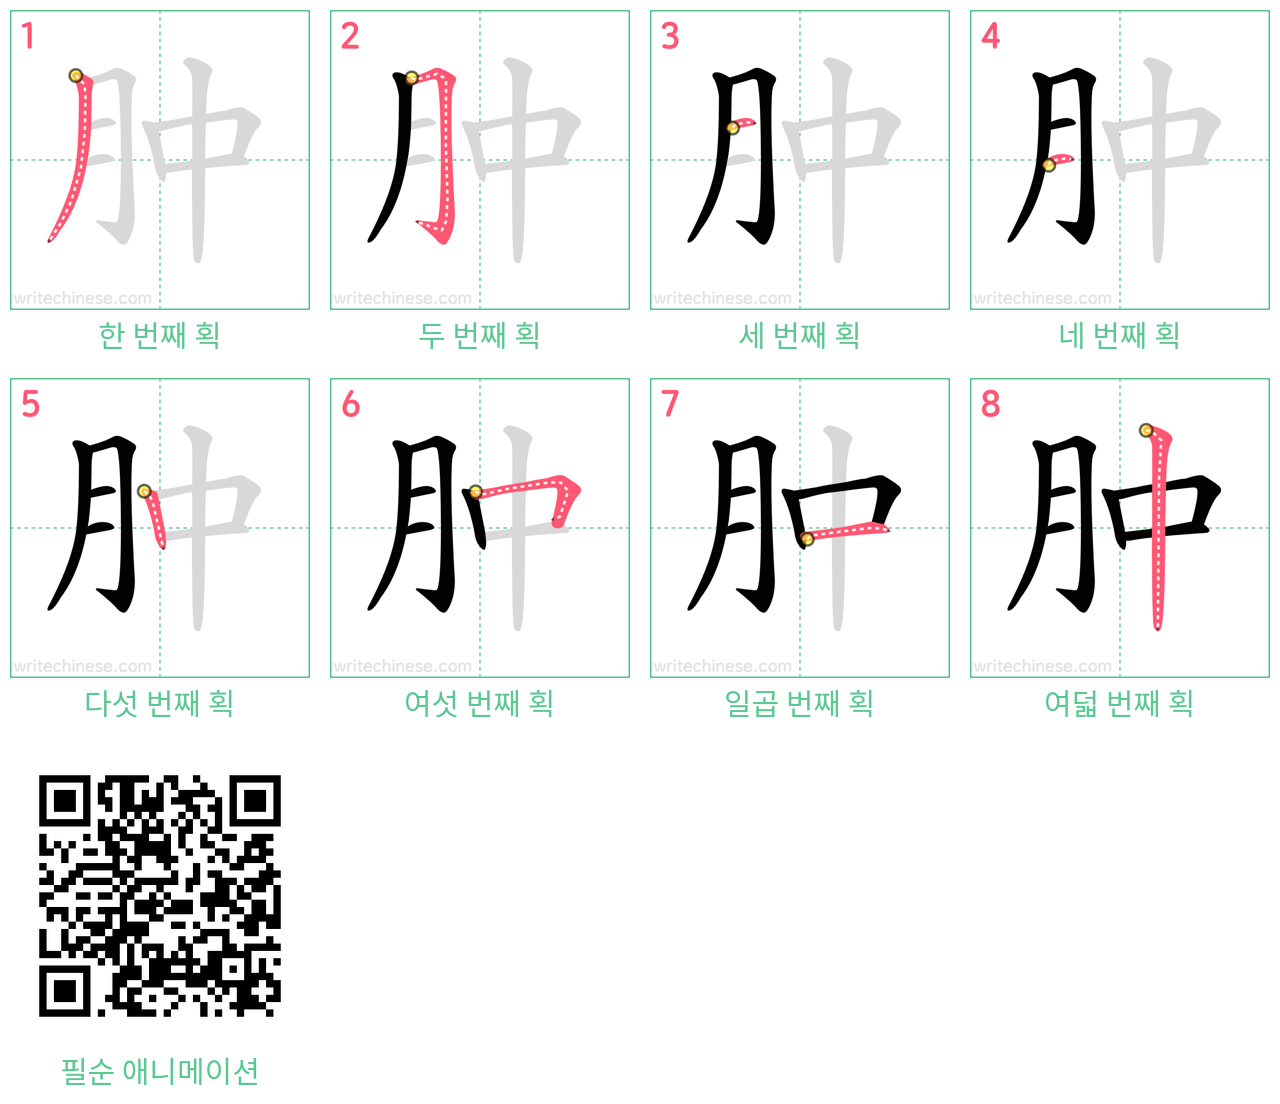 肿 step-by-step stroke order diagrams